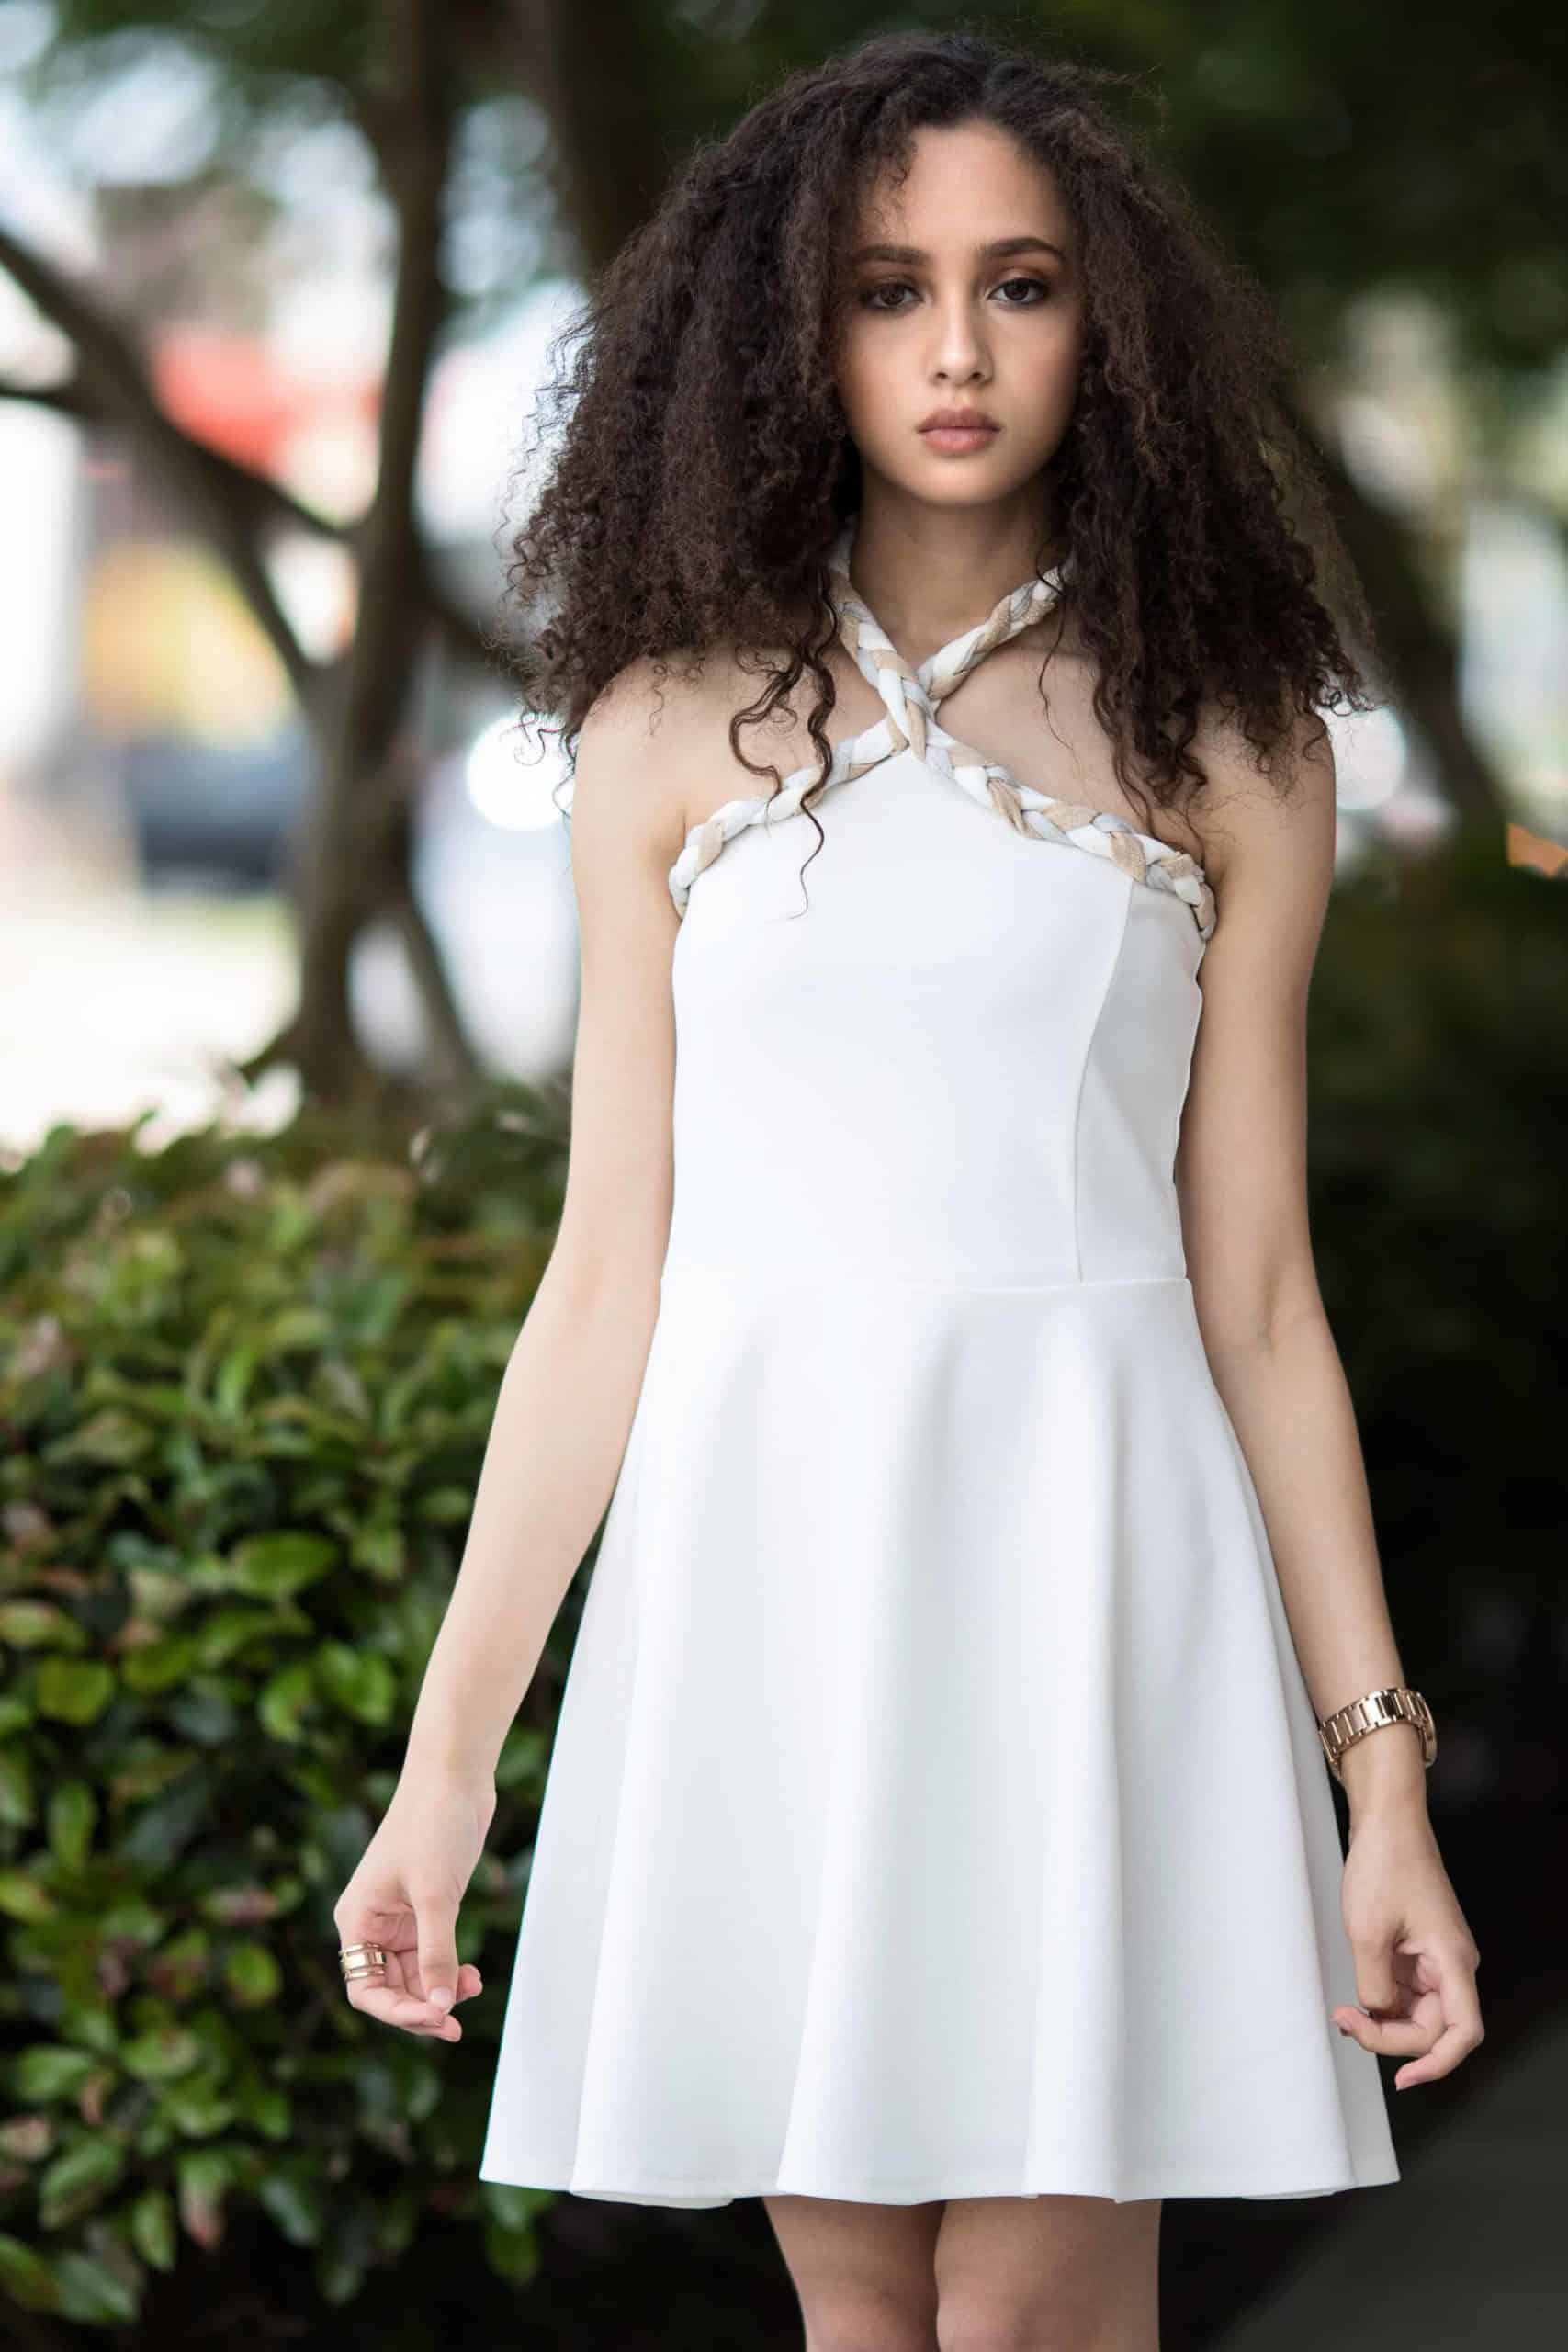 stylish white dress girls